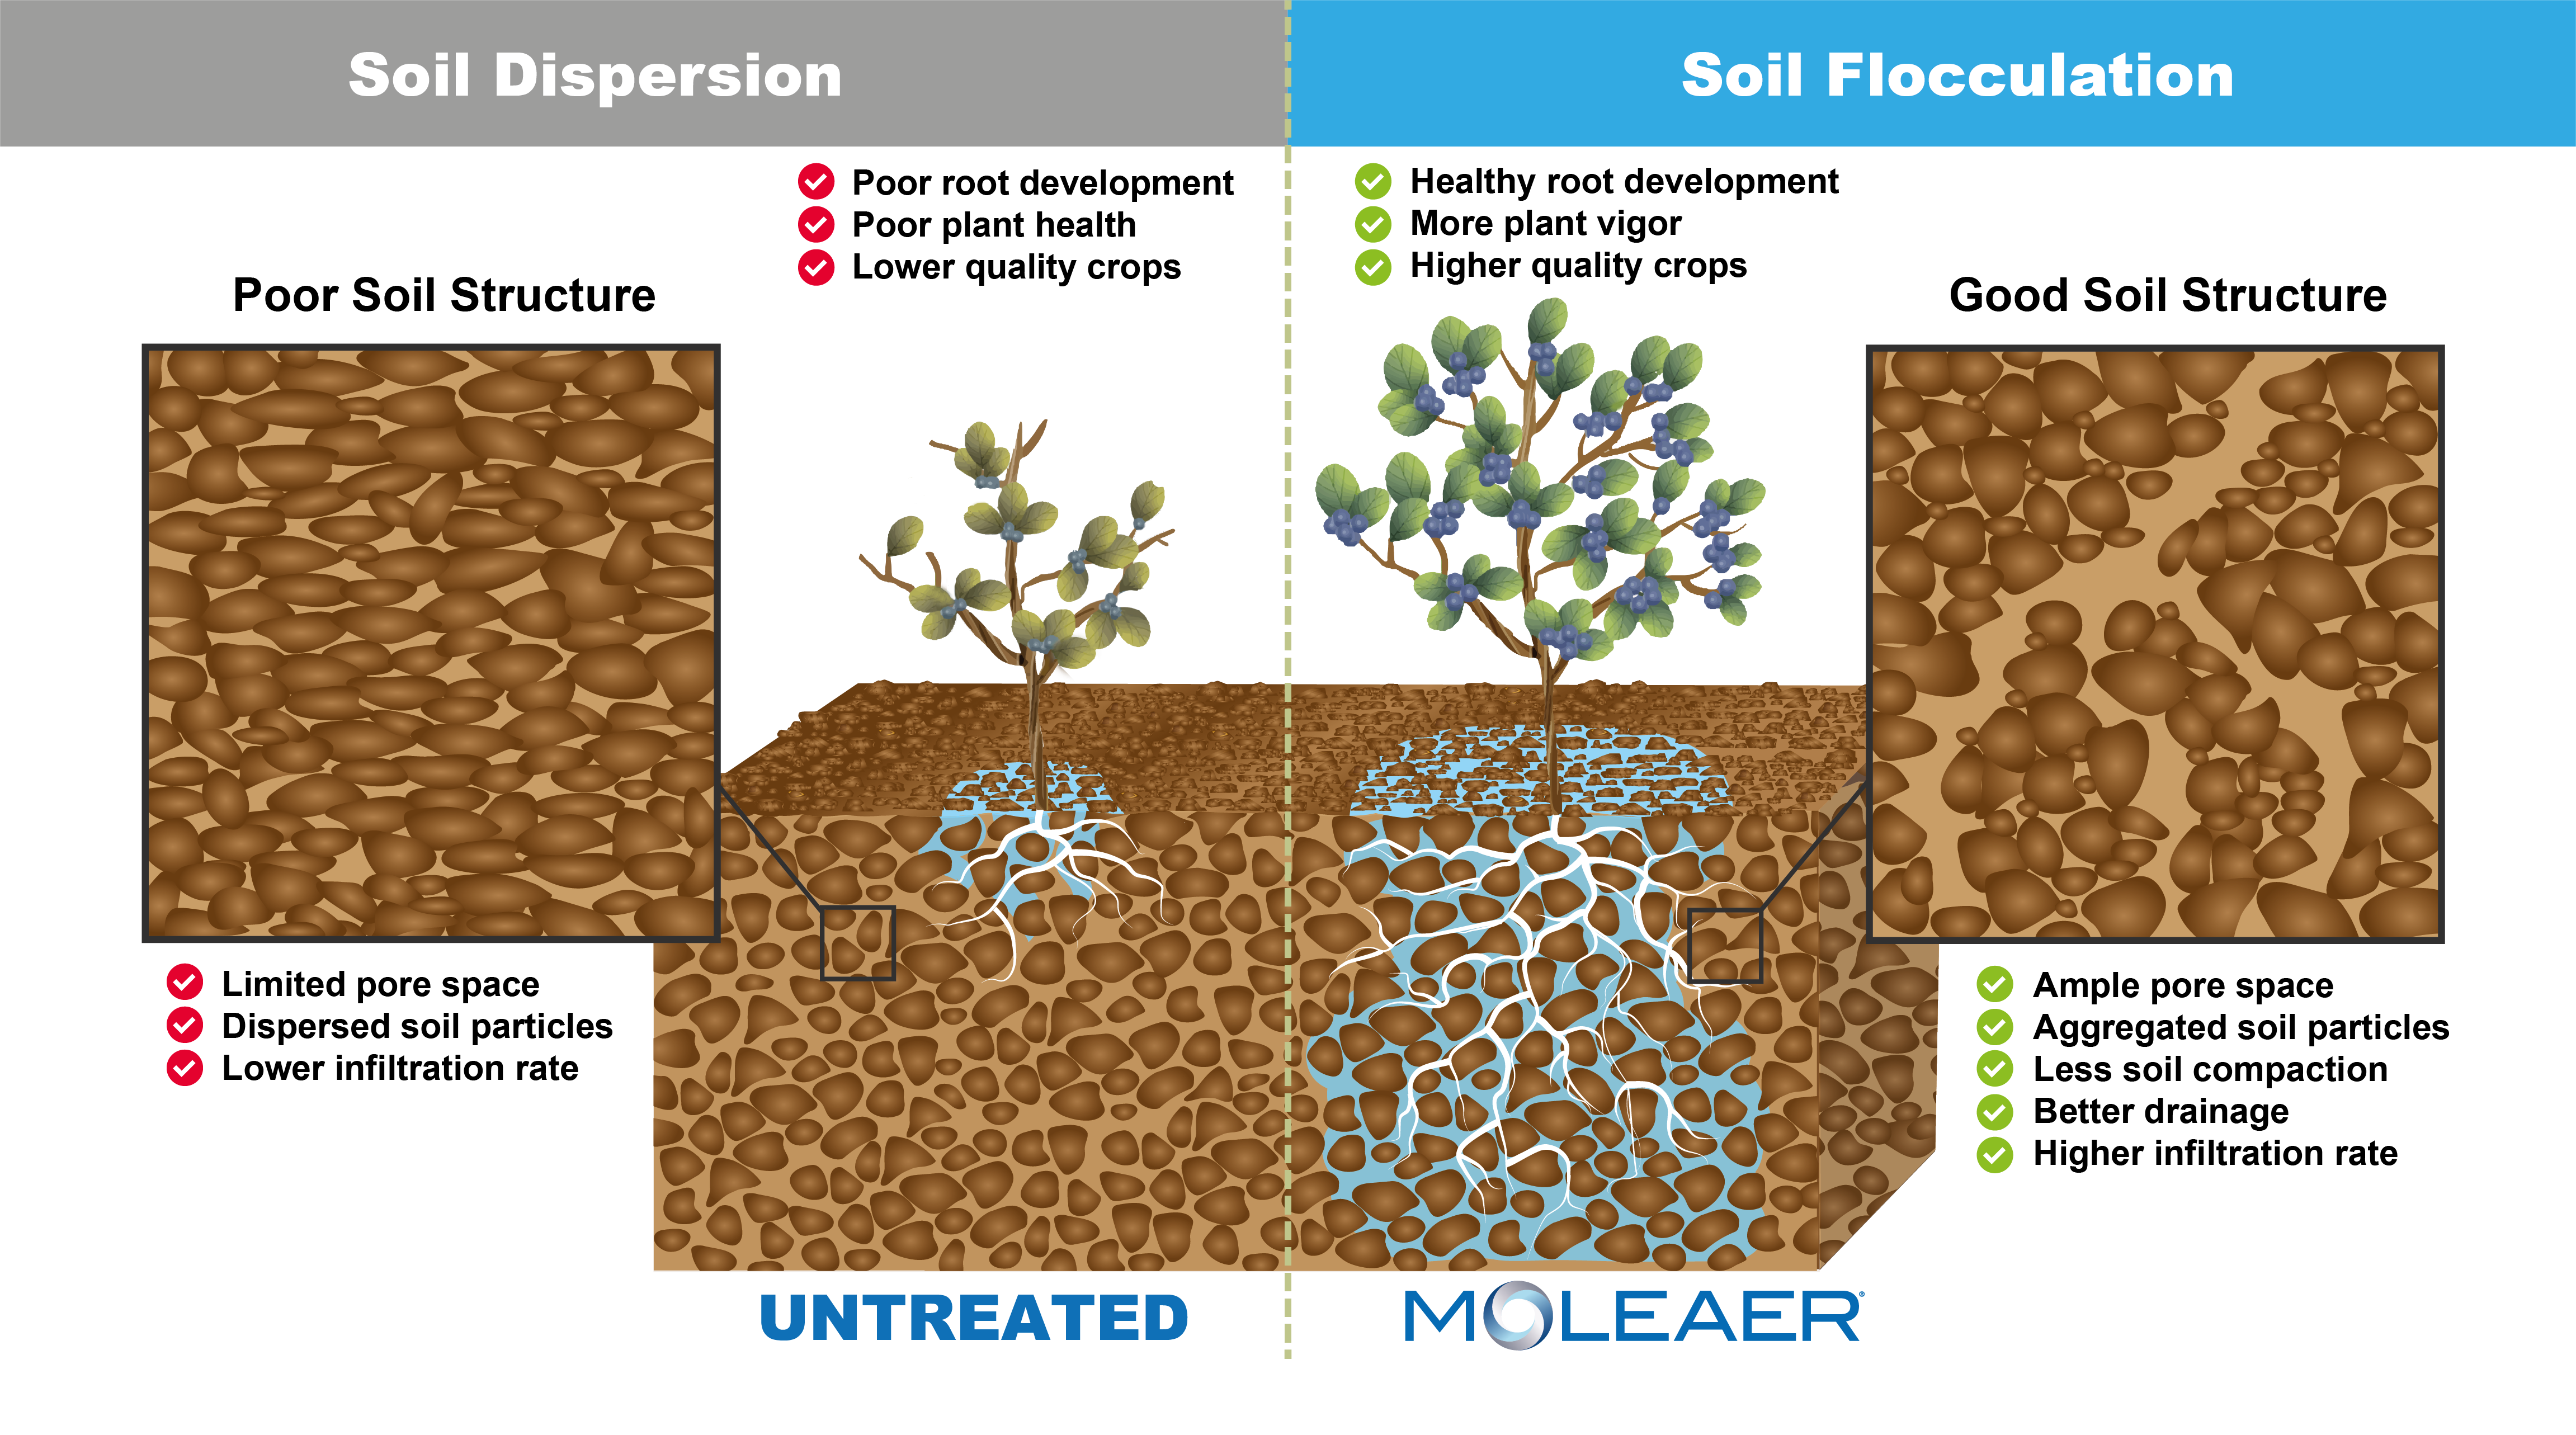 Soil Floculation vs Soil Dispersion - nanobubbles for soil health